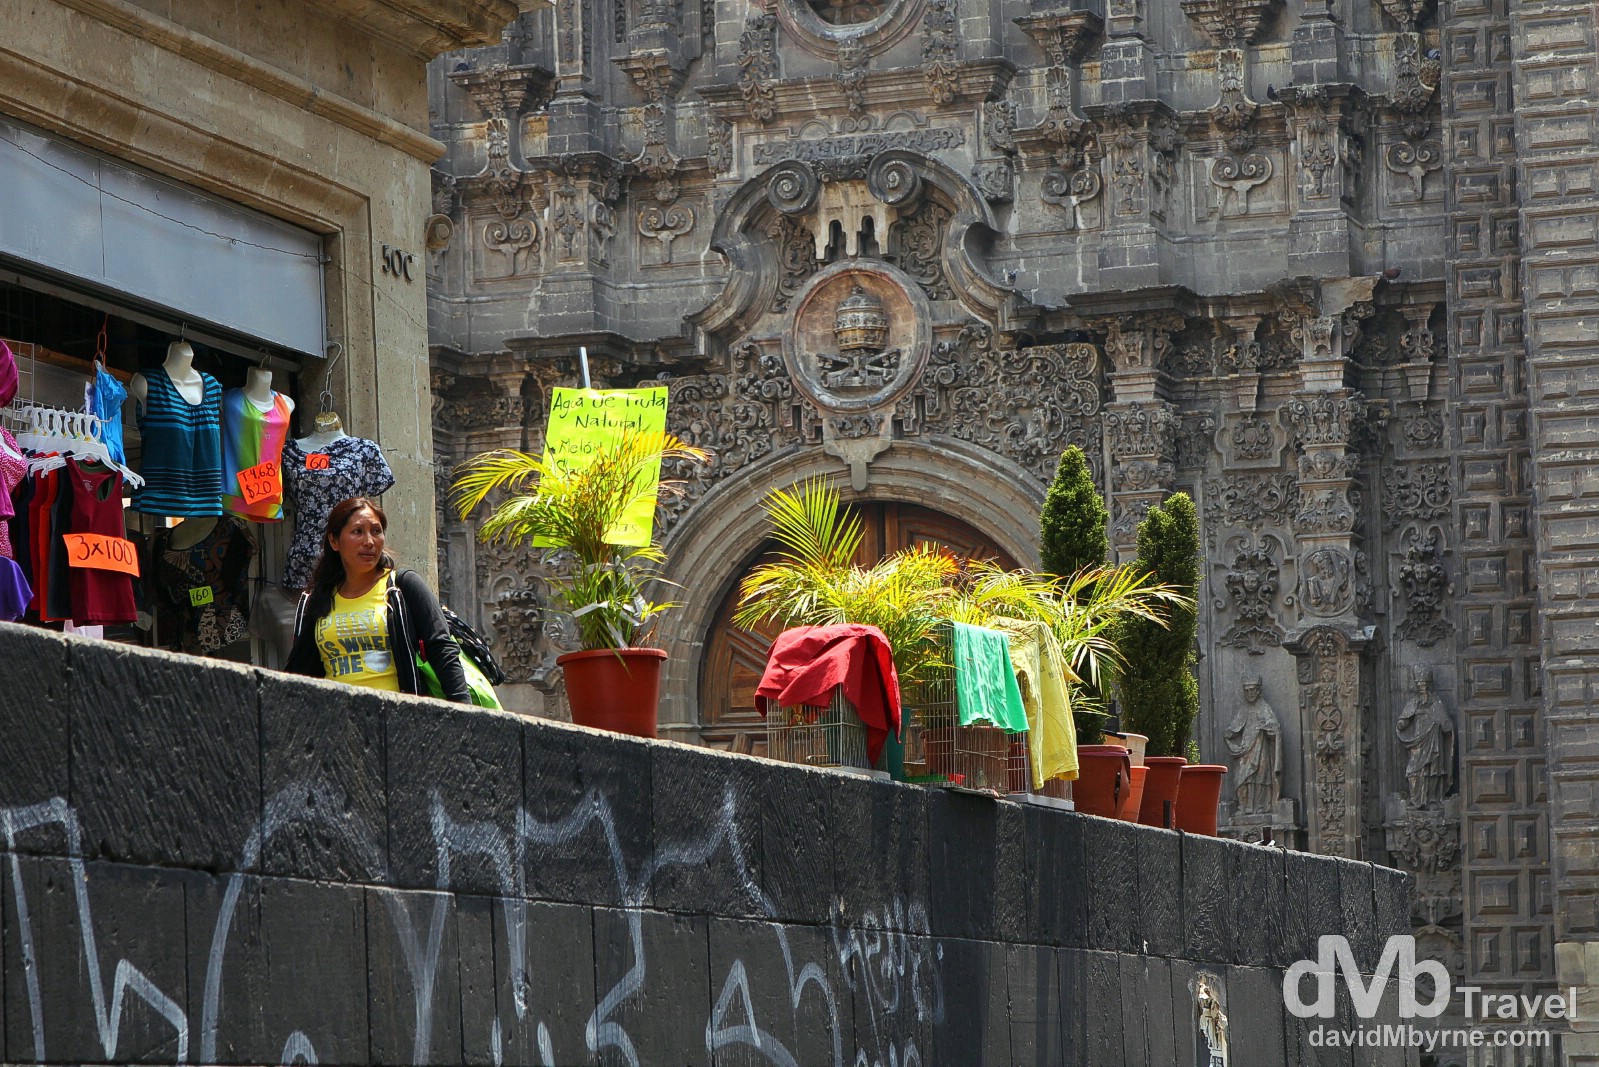 The hyper-baroque façade of Templo de la Santisima Trinidad, graffiti & clothes for sale as seen from Mondea, Central Mexico City. April 26th 2013.